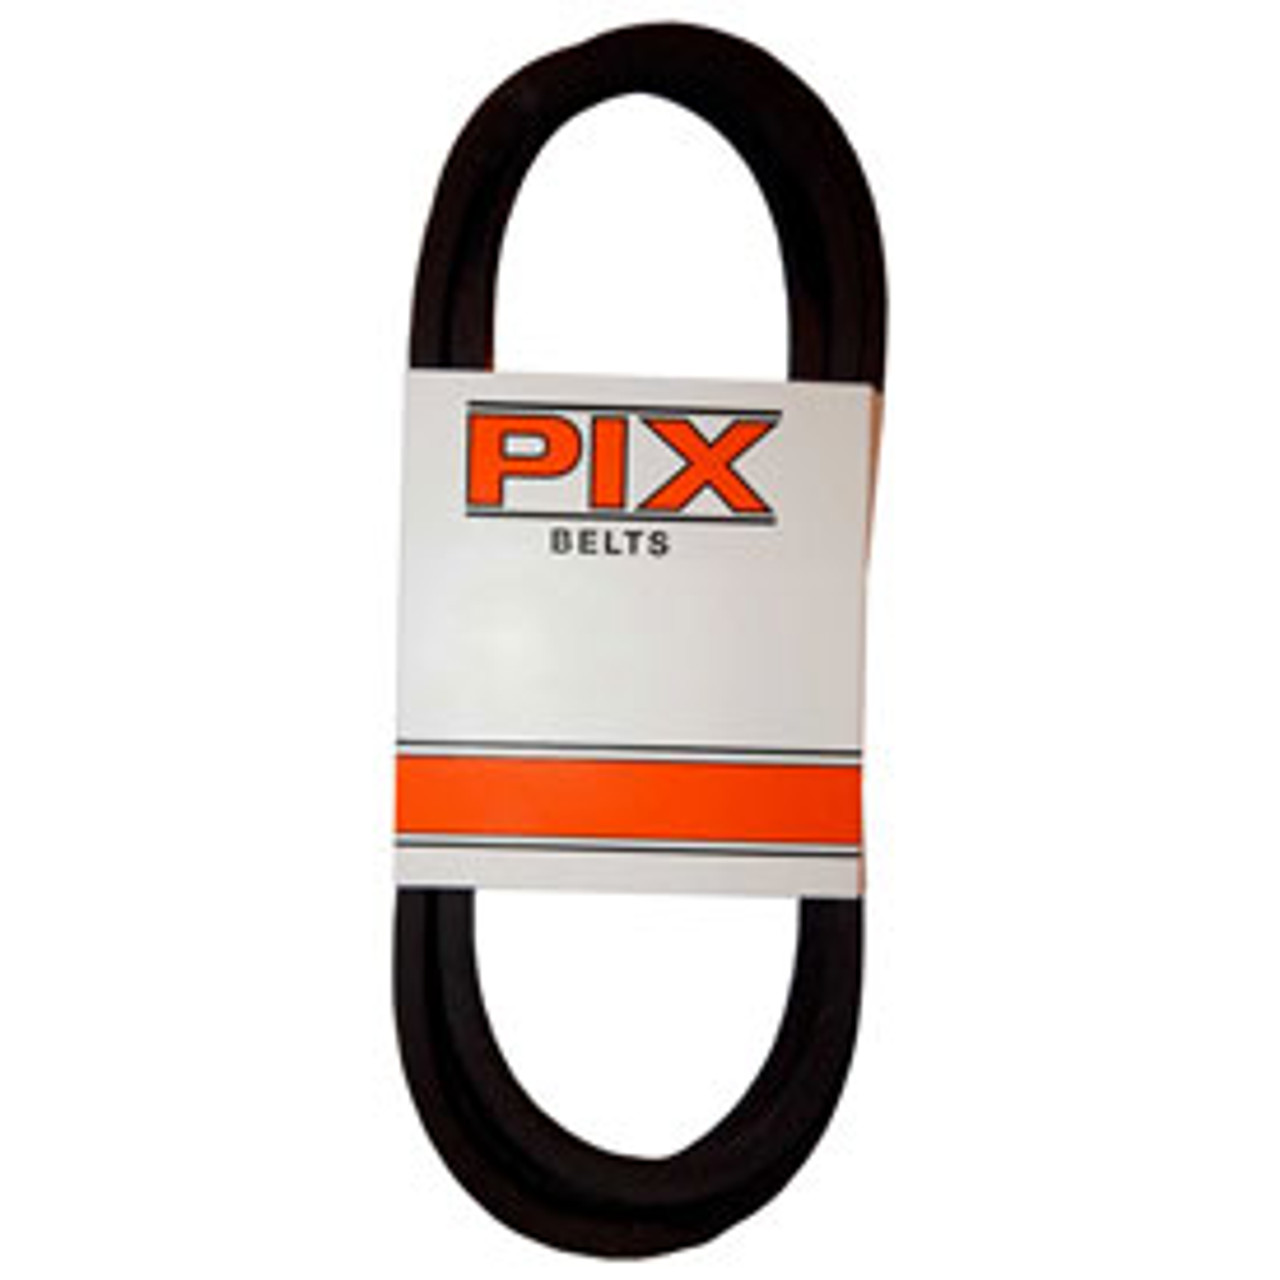 PIX B285 Classical V Belt  21/32" X 288"